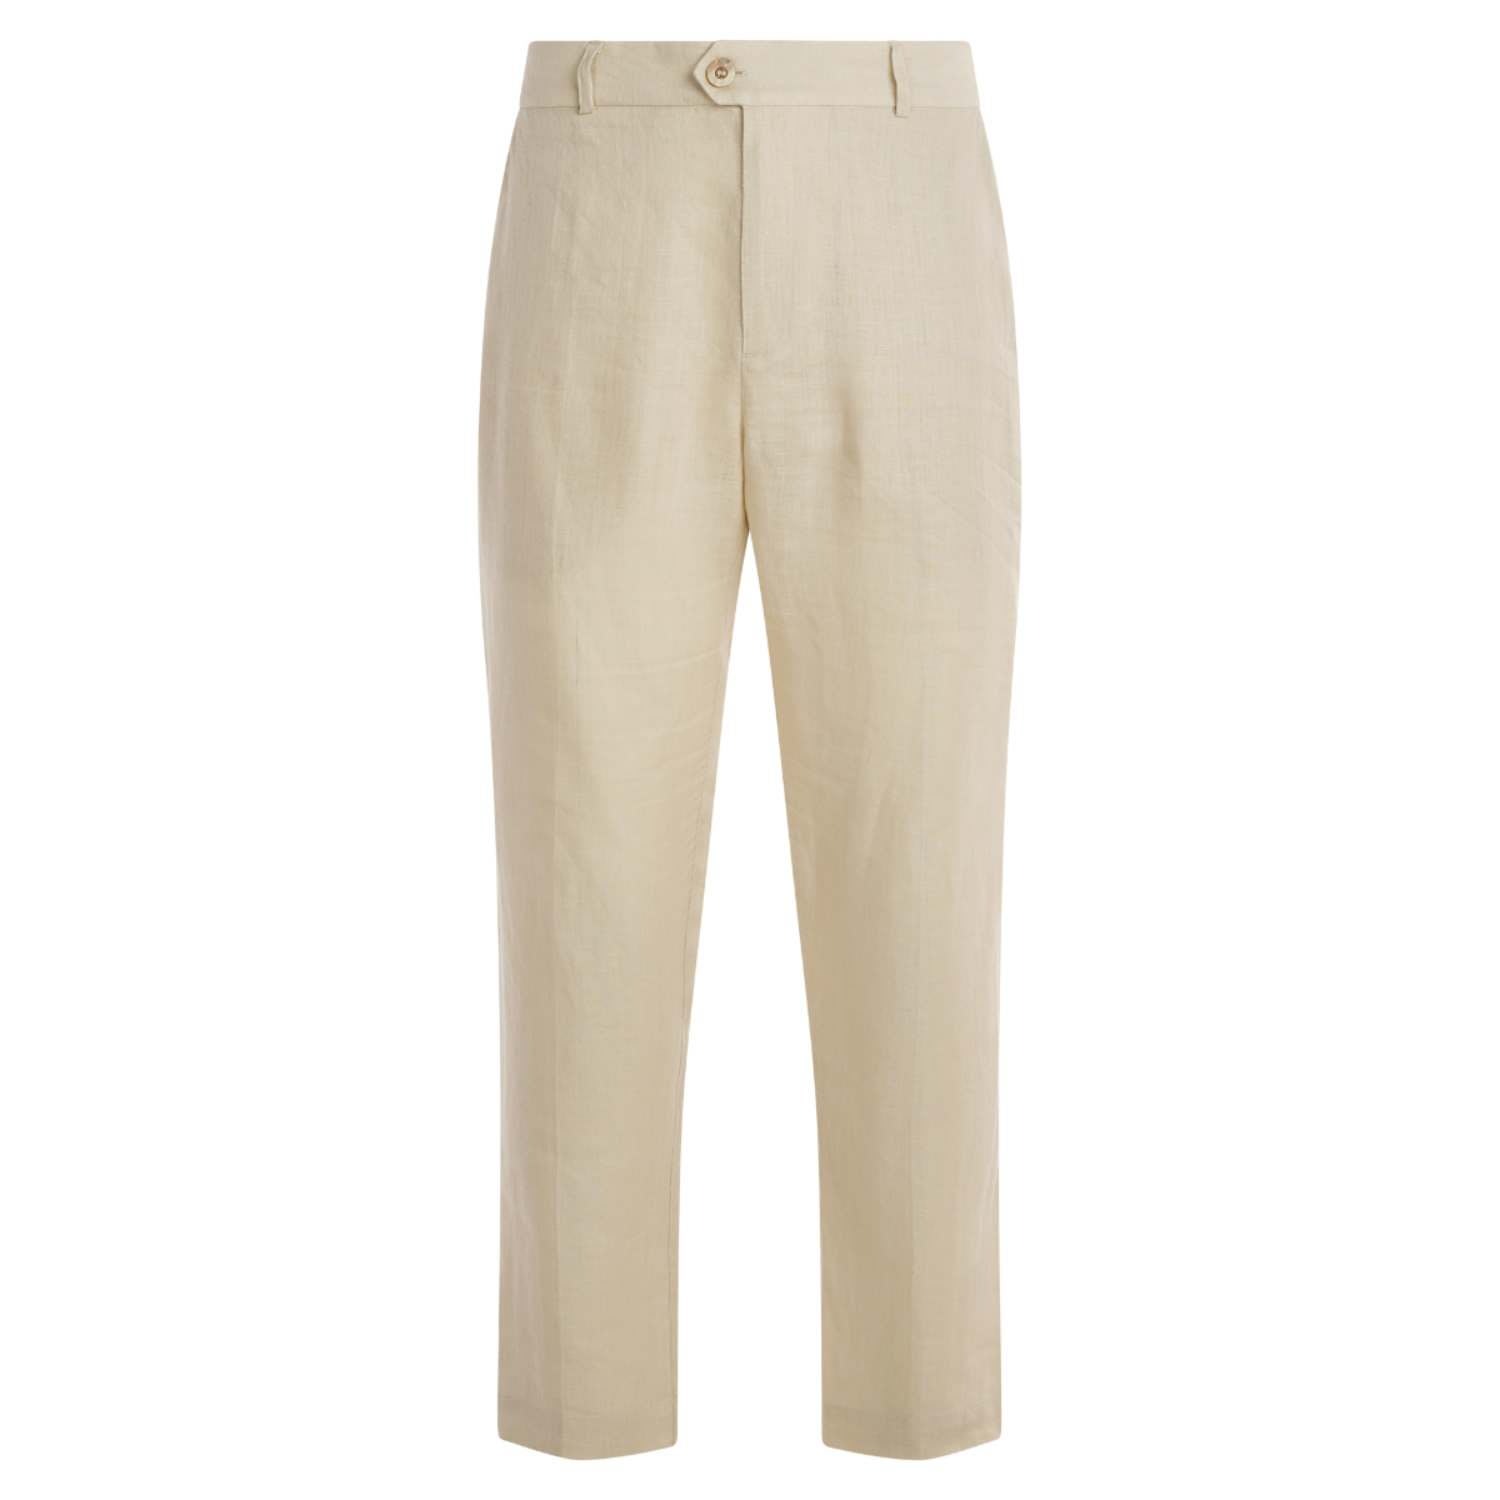 Haris Cotton Men's Neutrals Classic Linen Pants - Beige